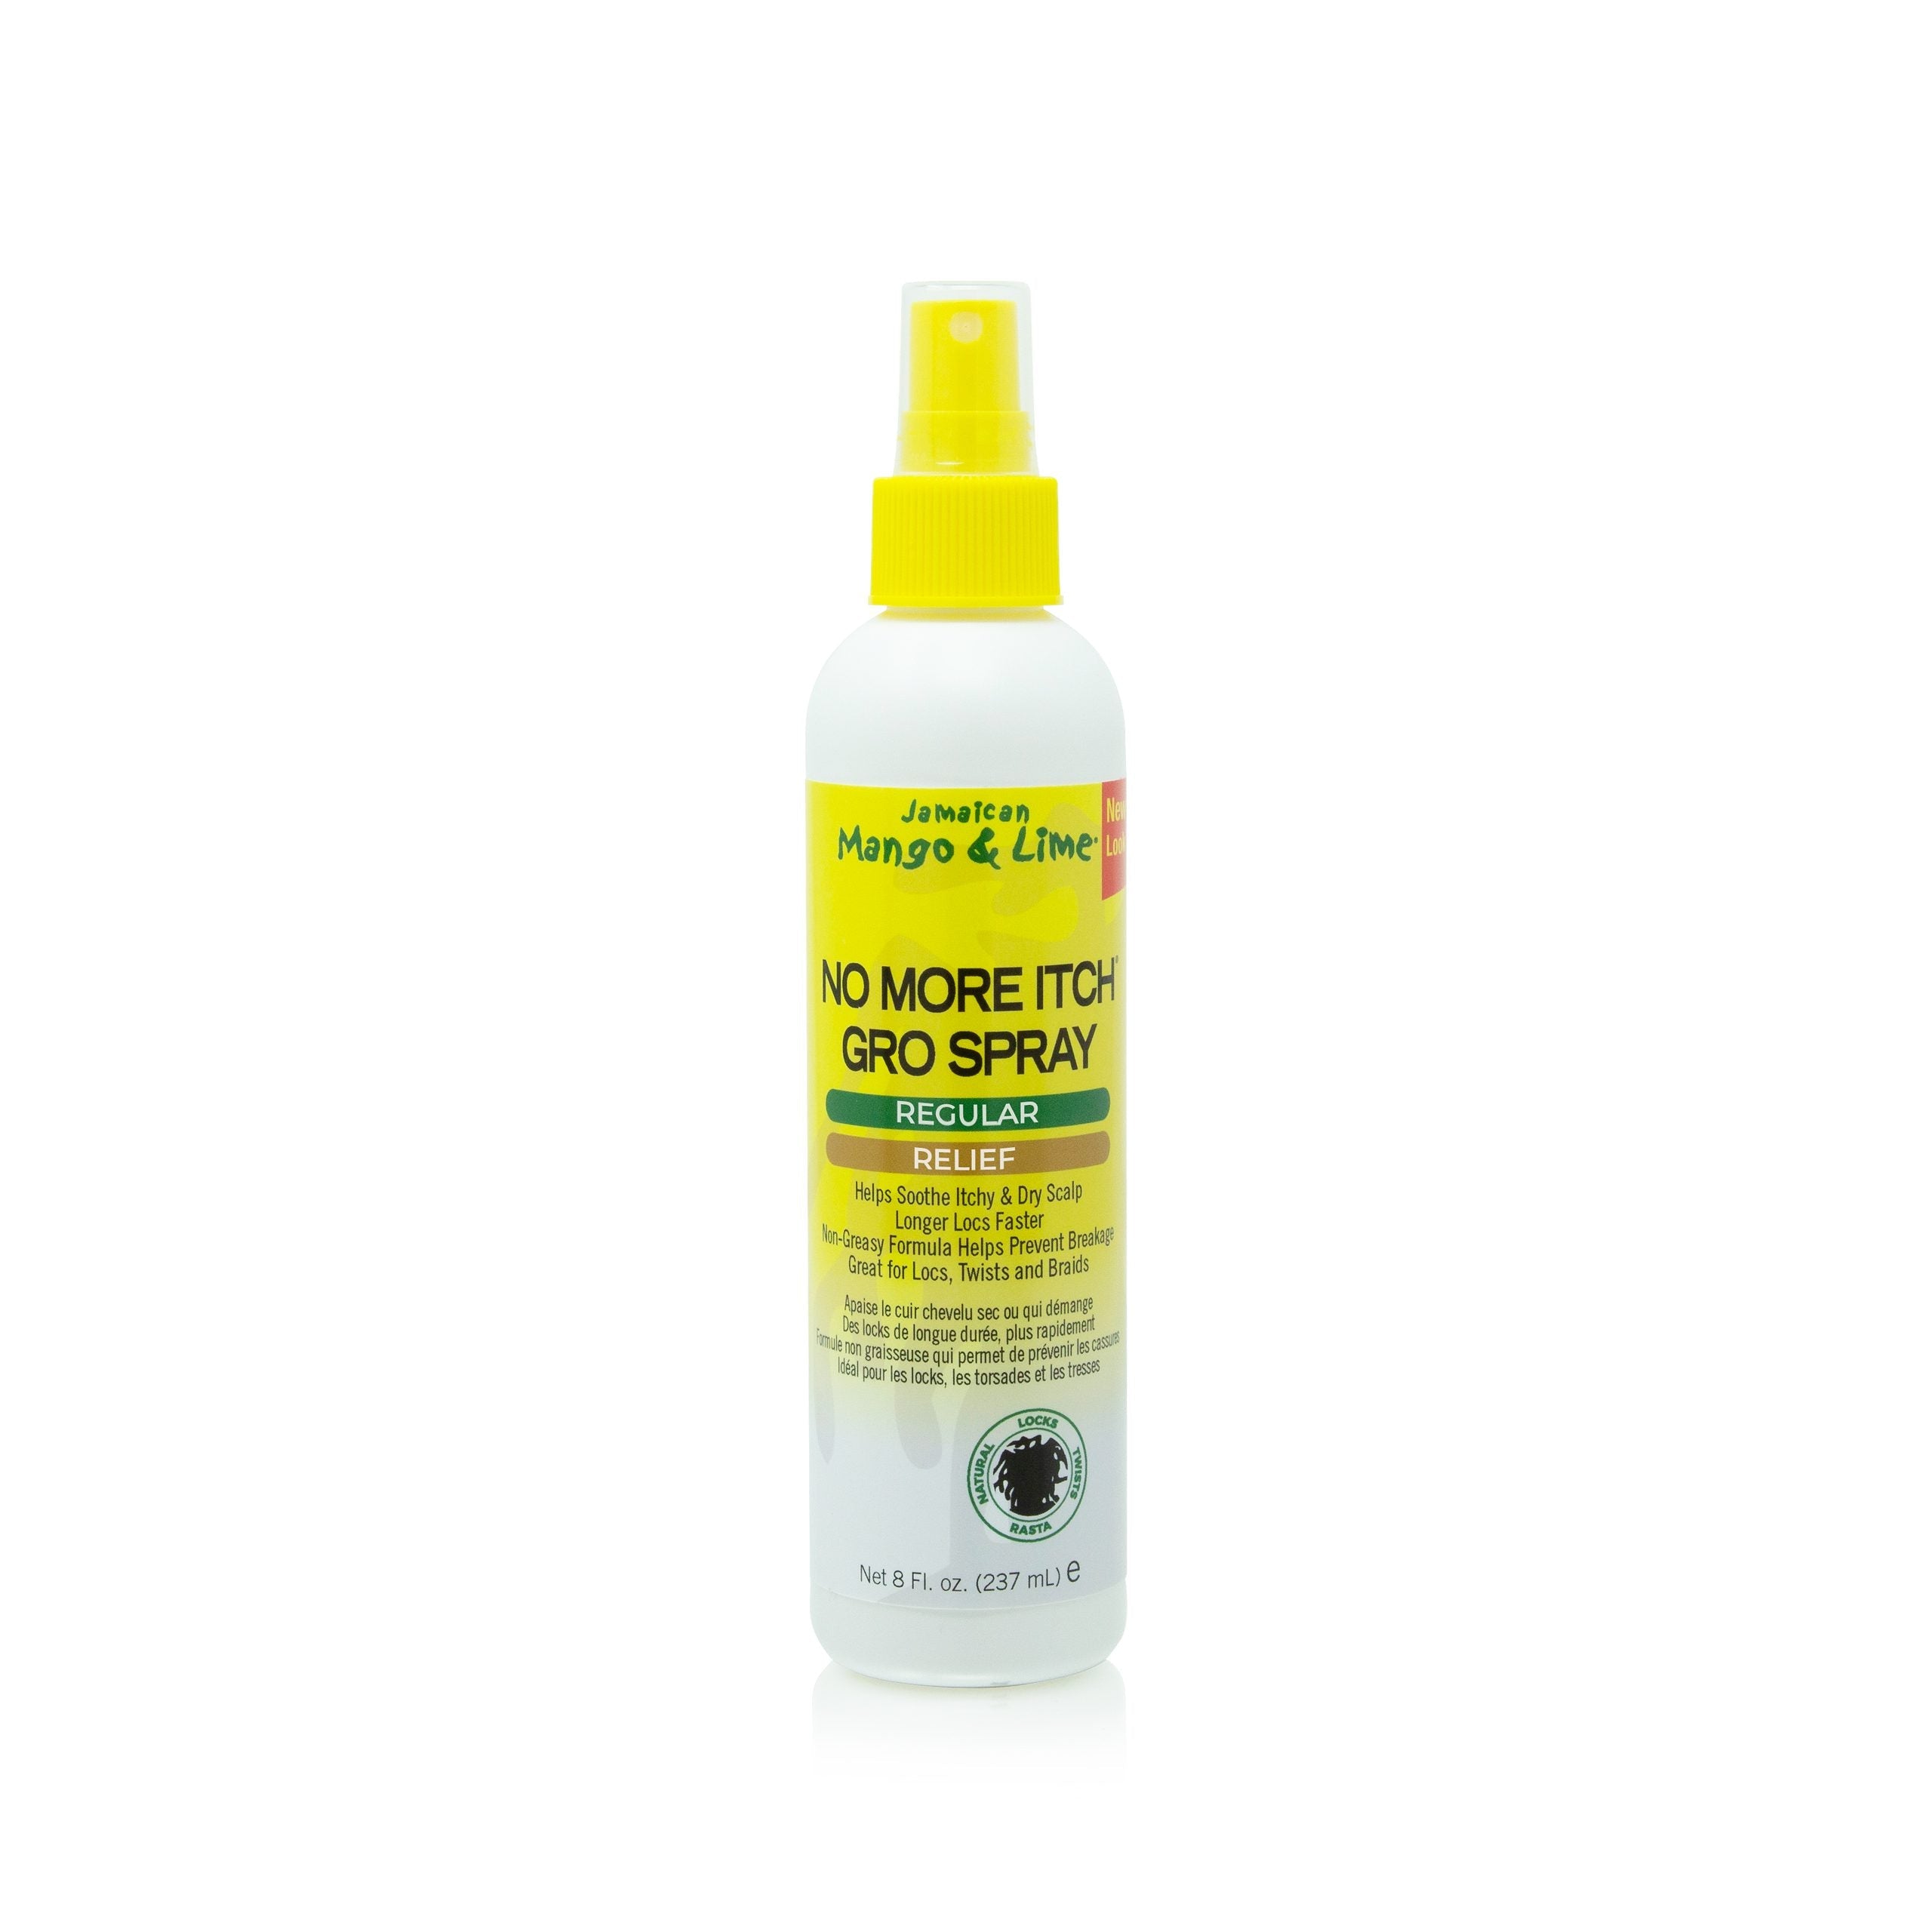 Jamaican Mango & Lime No More Itch Gro Spray Regular 8oz